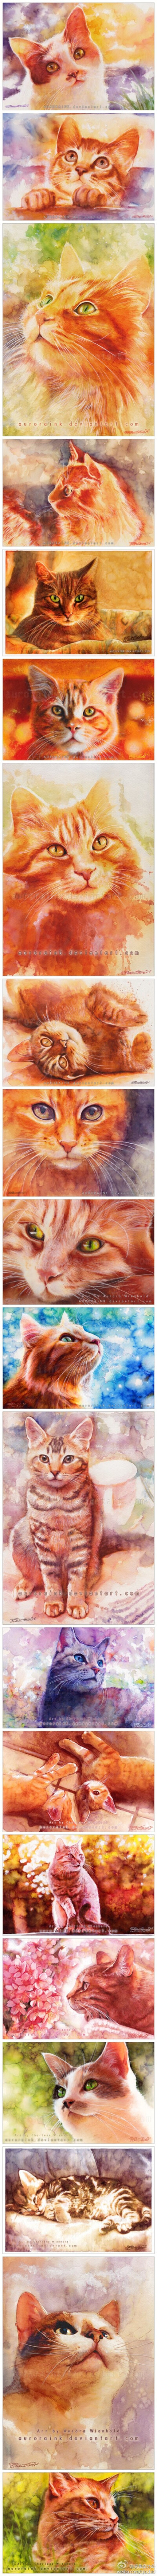 明媚阳光的可爱猫咪，来自德国Aurora Wienhold的猫咪水彩绘画